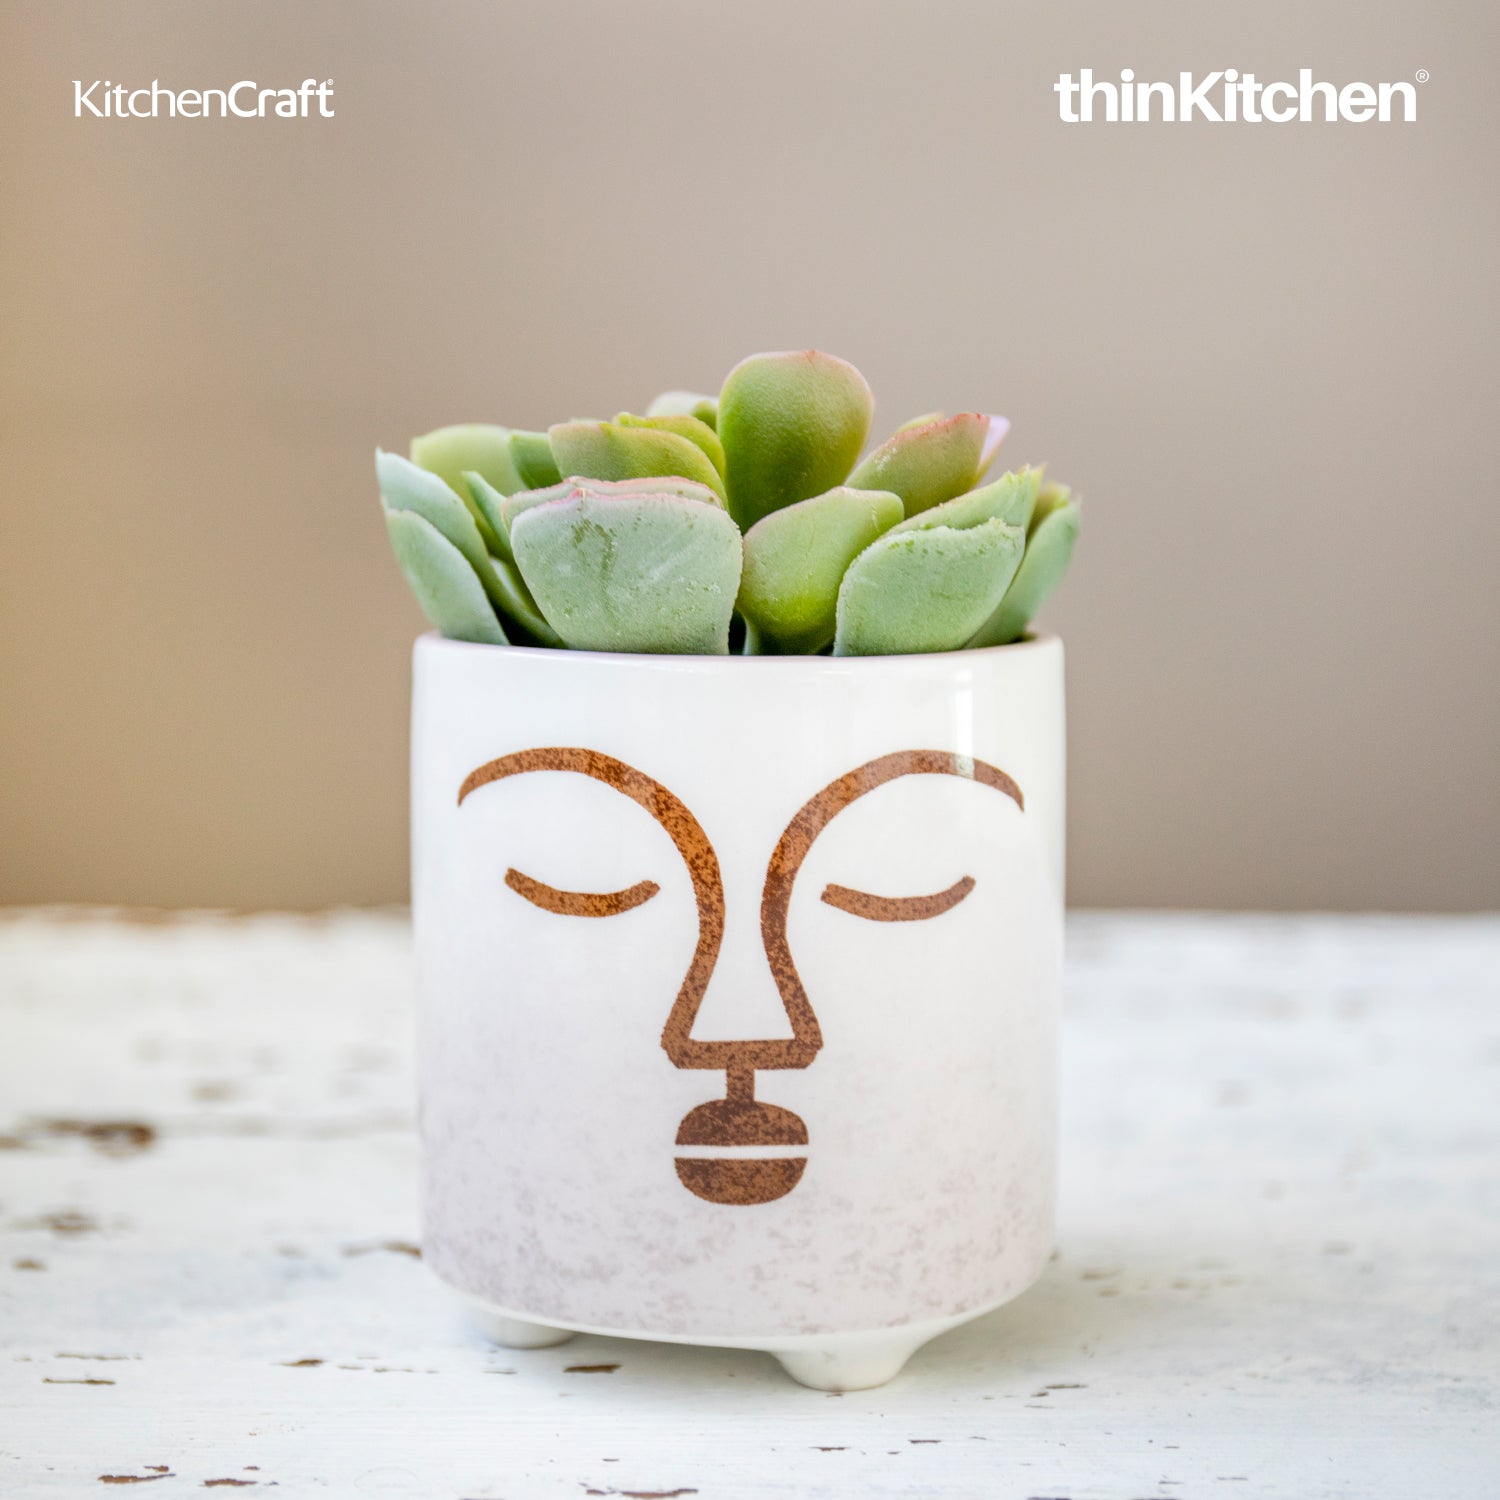 KitchenCraft - Premium Kitchenware & Homeware at thinKitchen